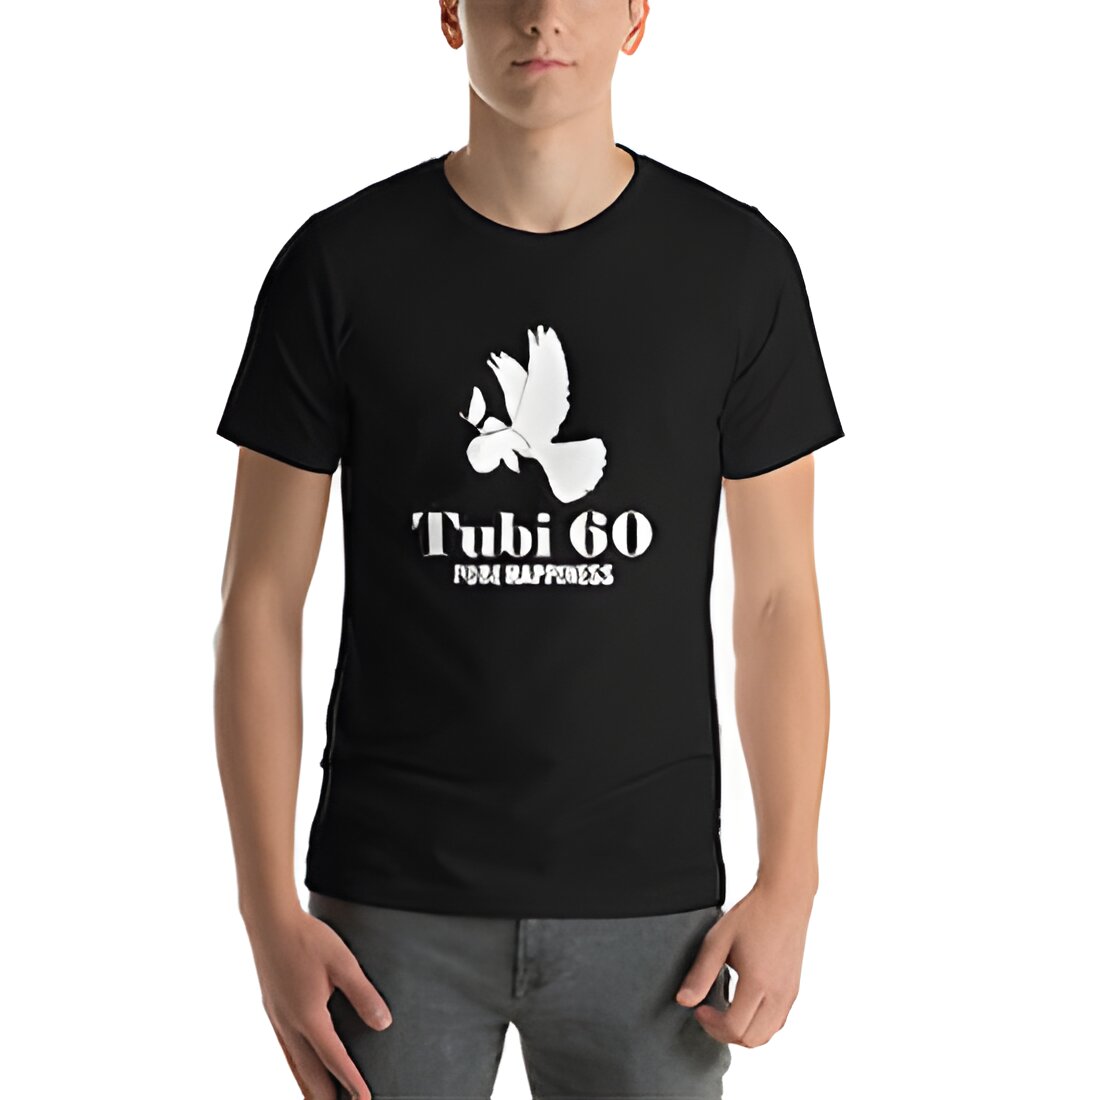 Free Tubi 60 T-Shirt & Swag